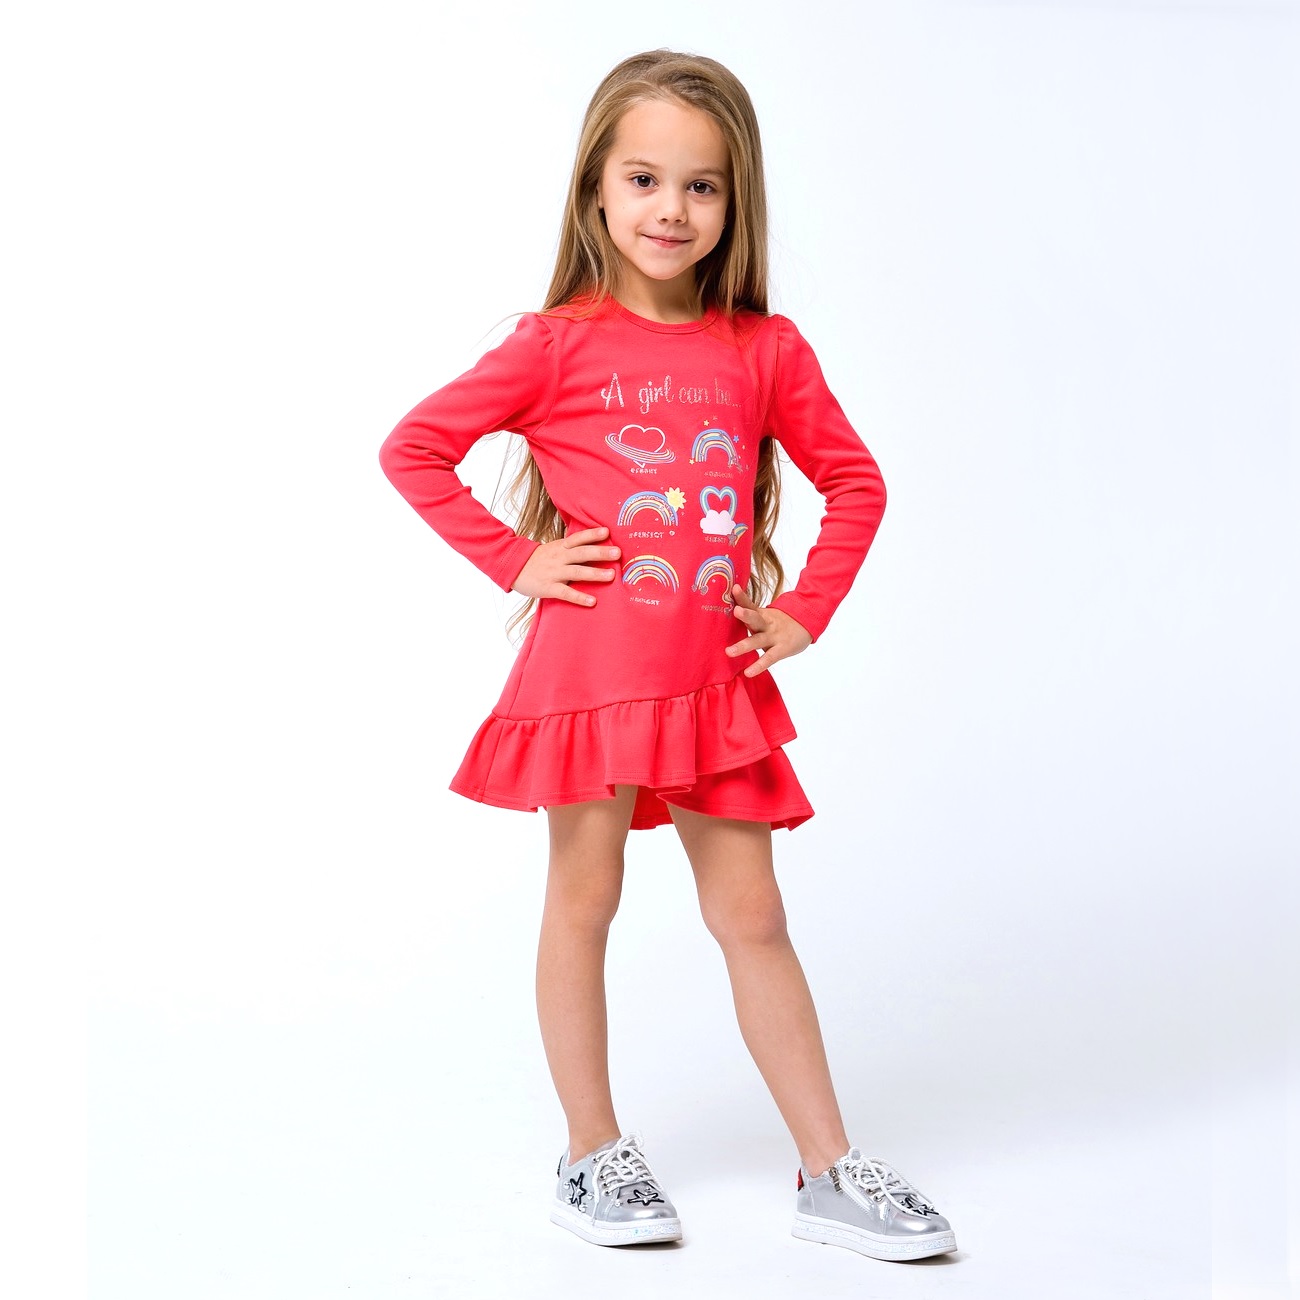 Дитяче плаття для дівчинки "Тільки для дівчаток", рожевий корал (120256), Smil (Смил)